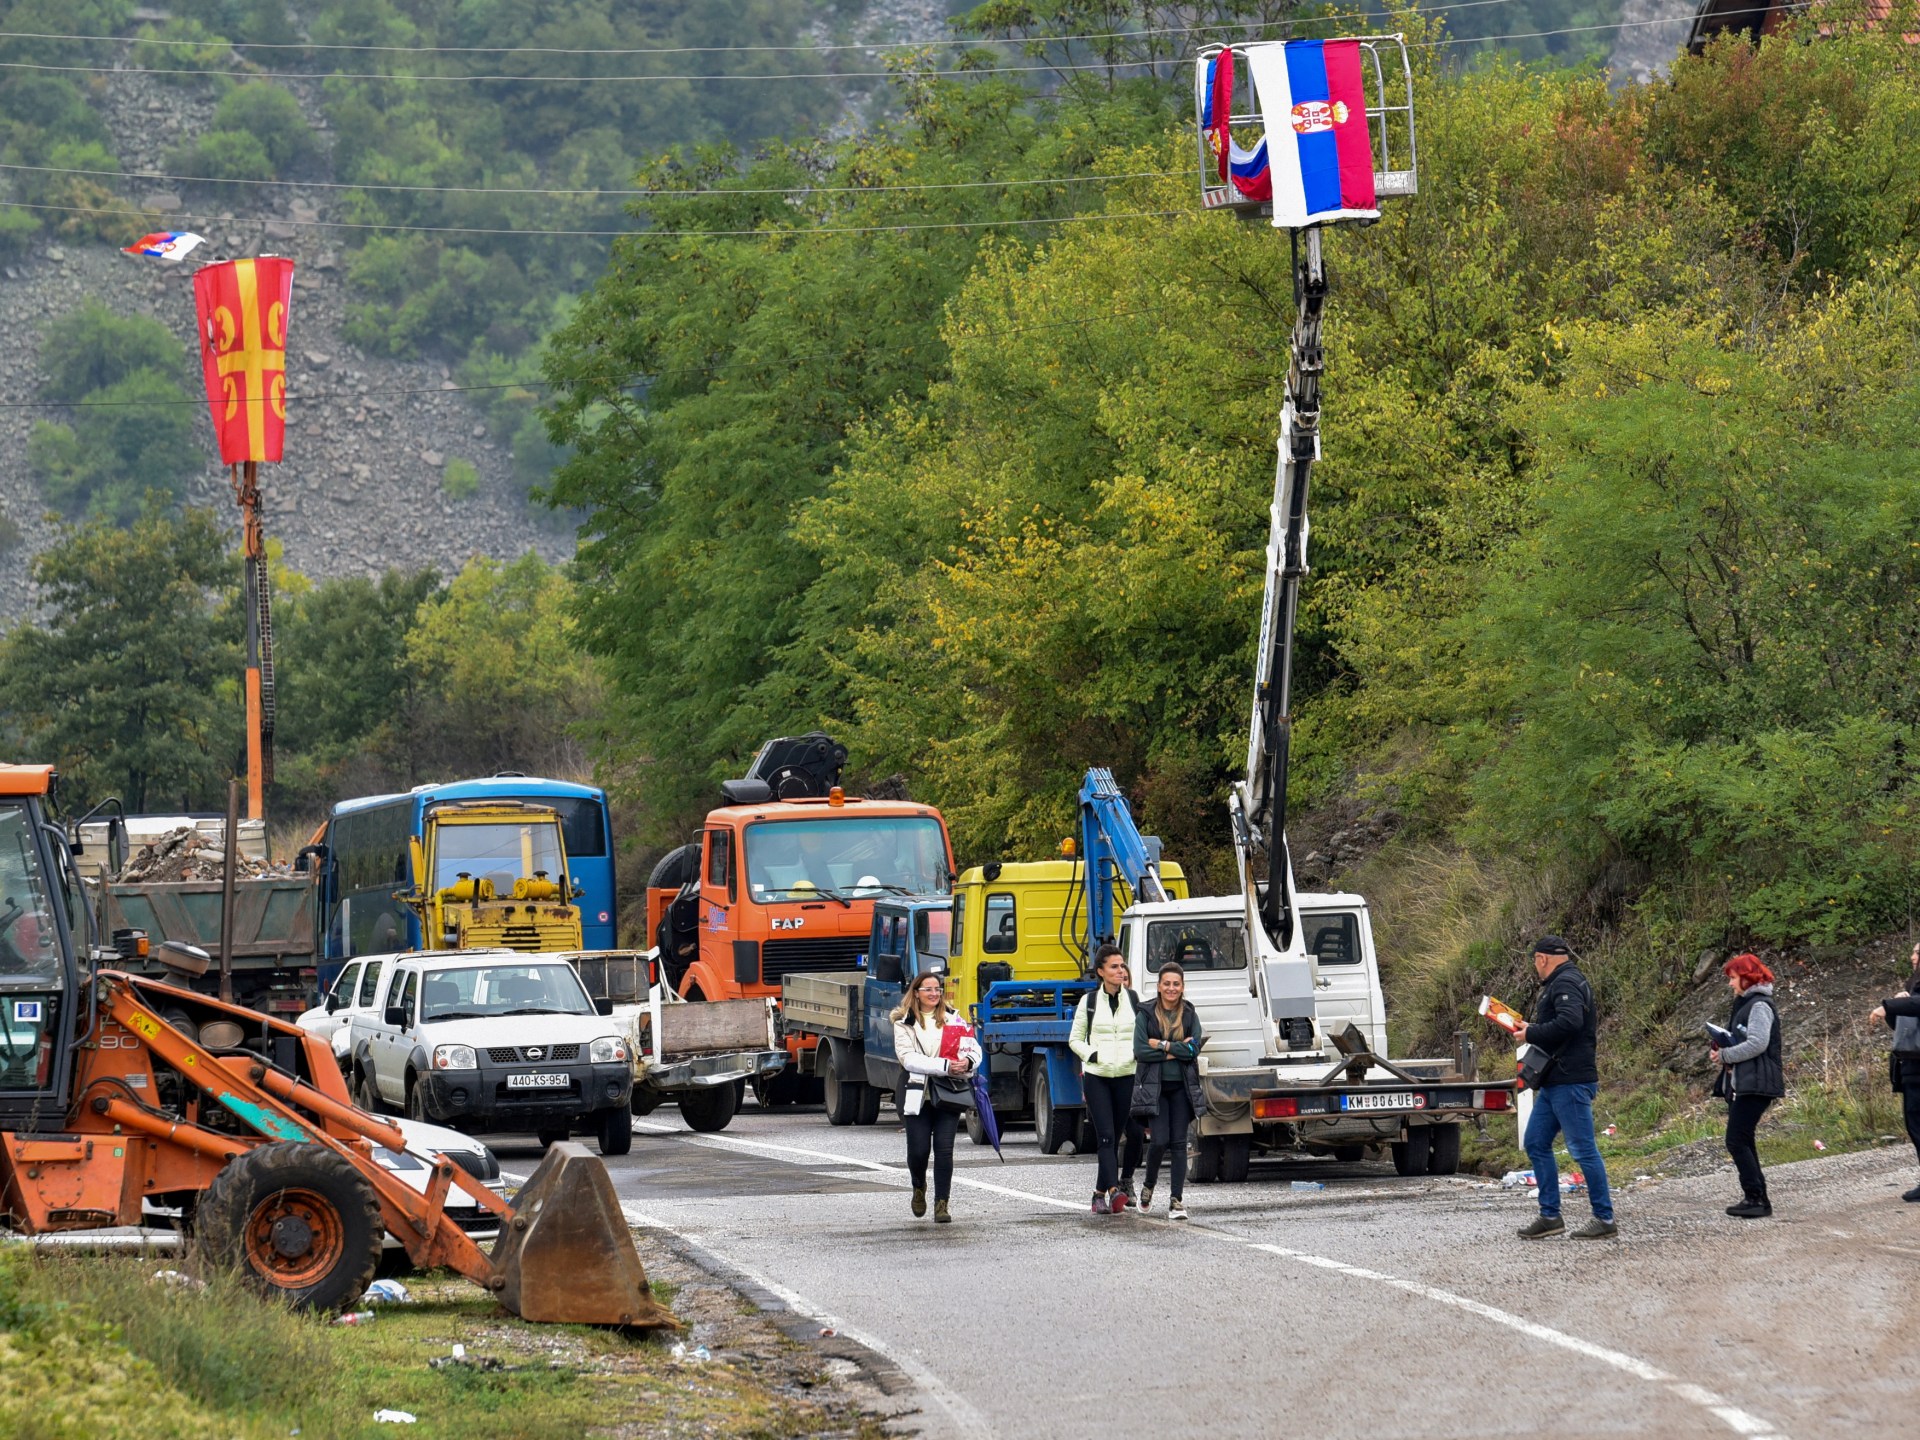 Serbia tangkap polisi Kosovo saat ketegangan meningkat |  Berita